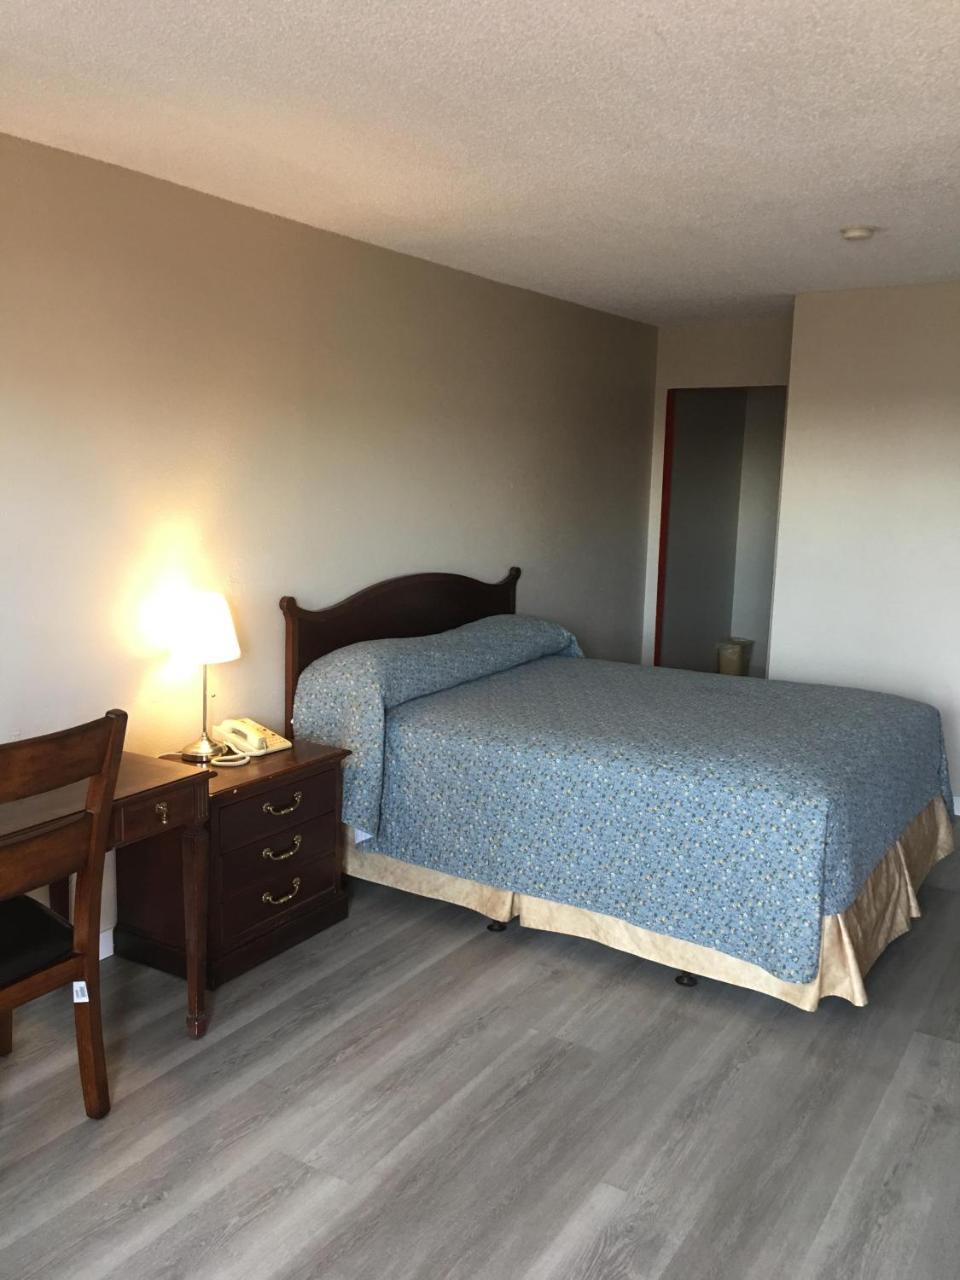 Red Deer Inn & Suites Luaran gambar